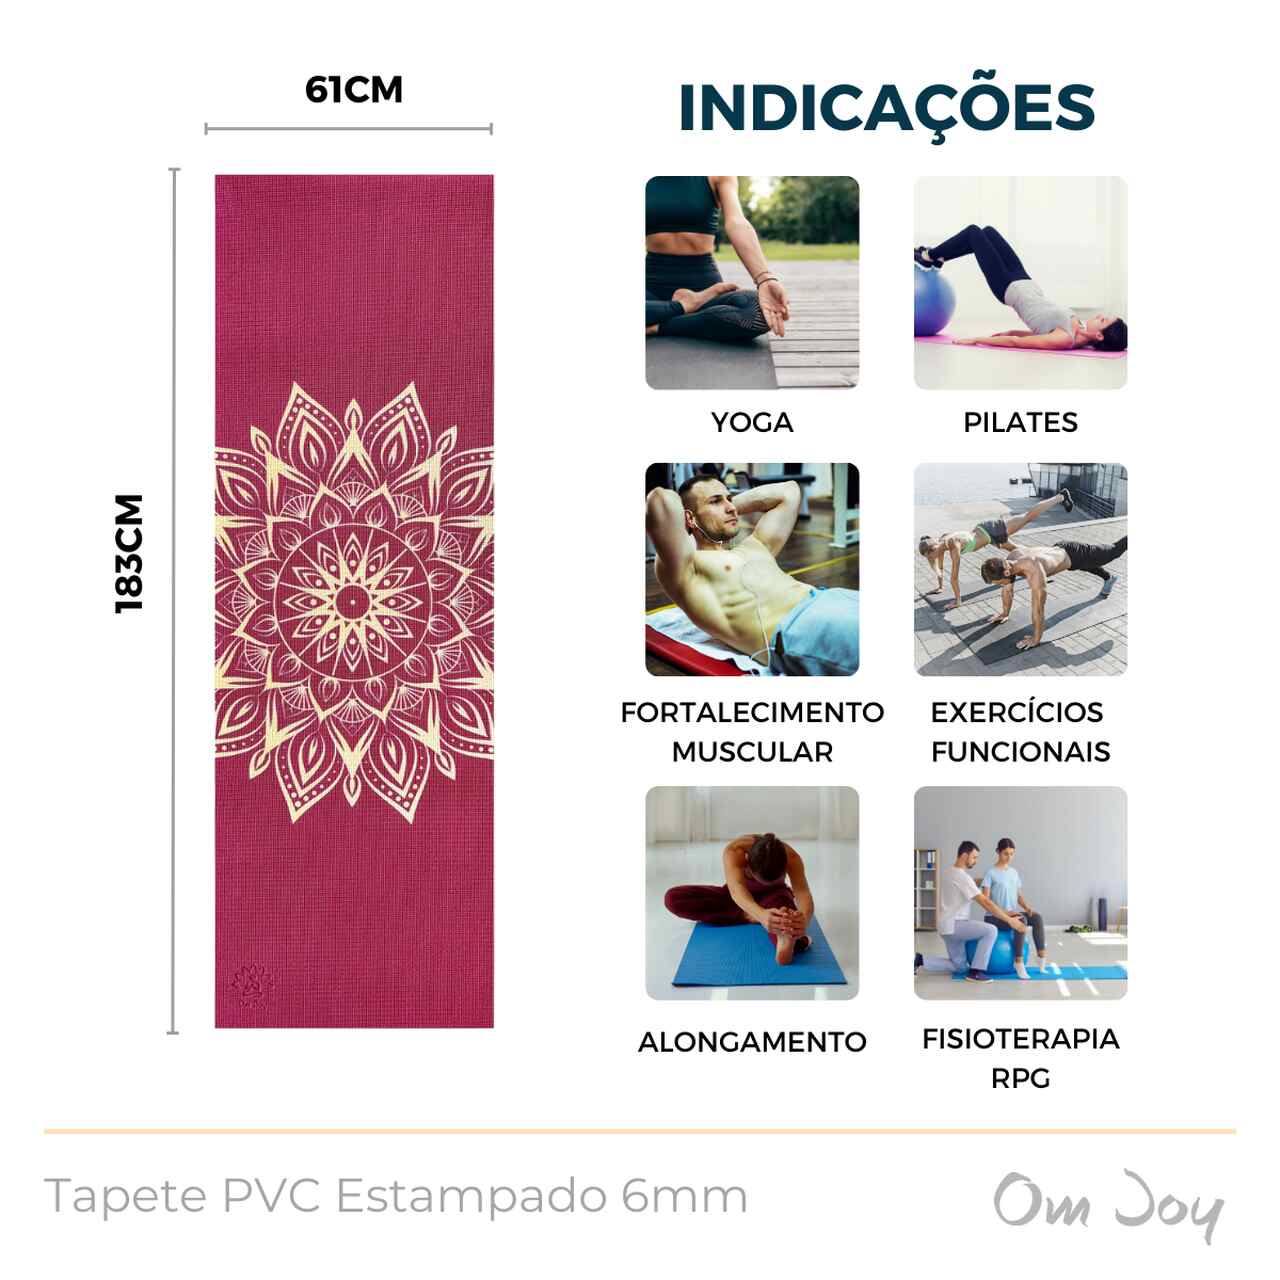 Tapete de Yoga Estampado PVC 6mm - Bali  - Om Joy